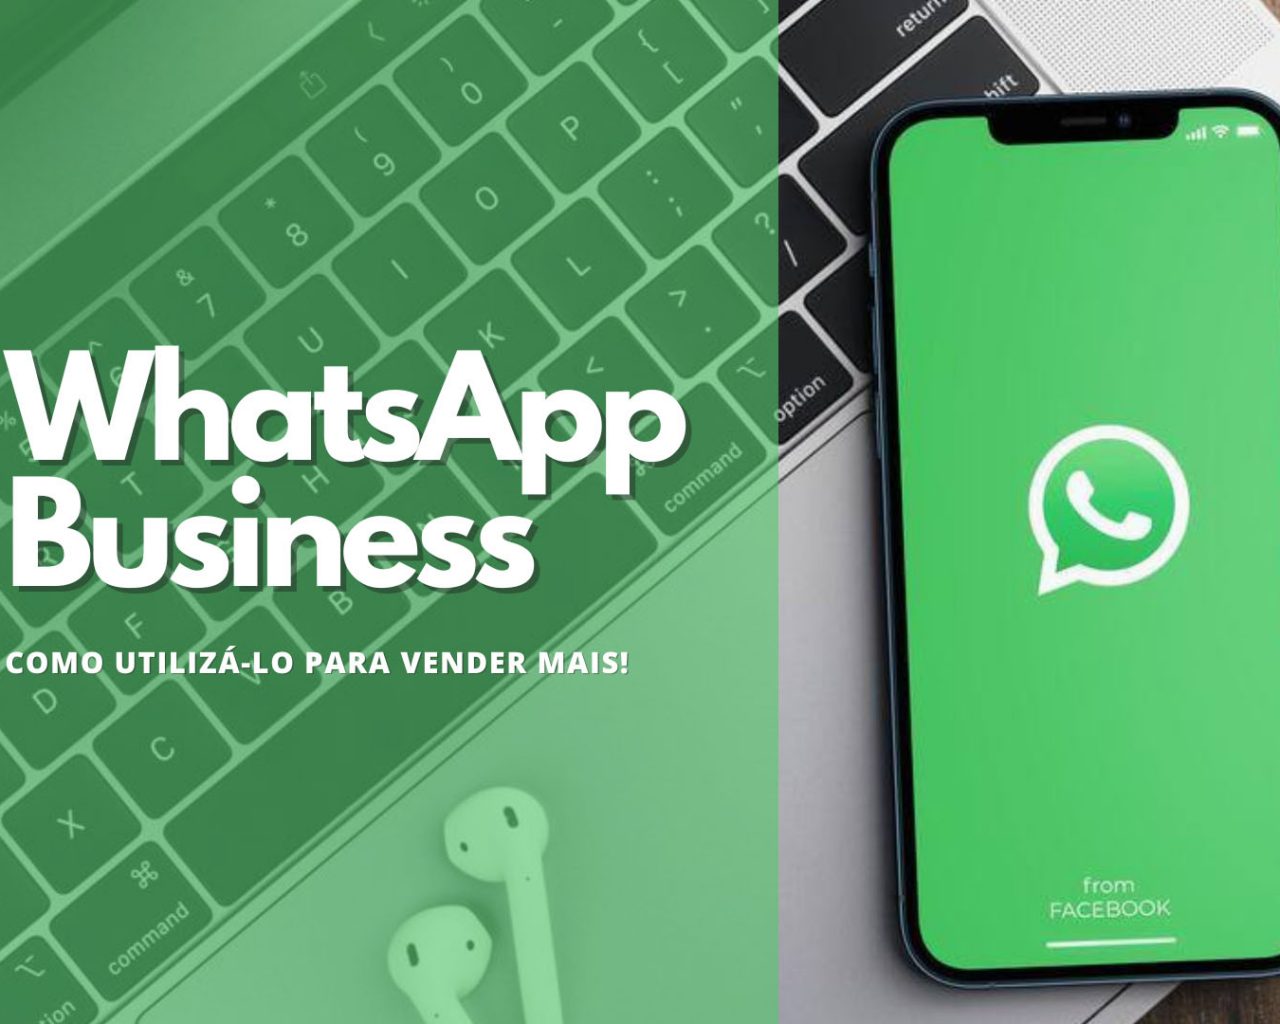 Whatsapp Business: Como utilizá-lo para vender mais!